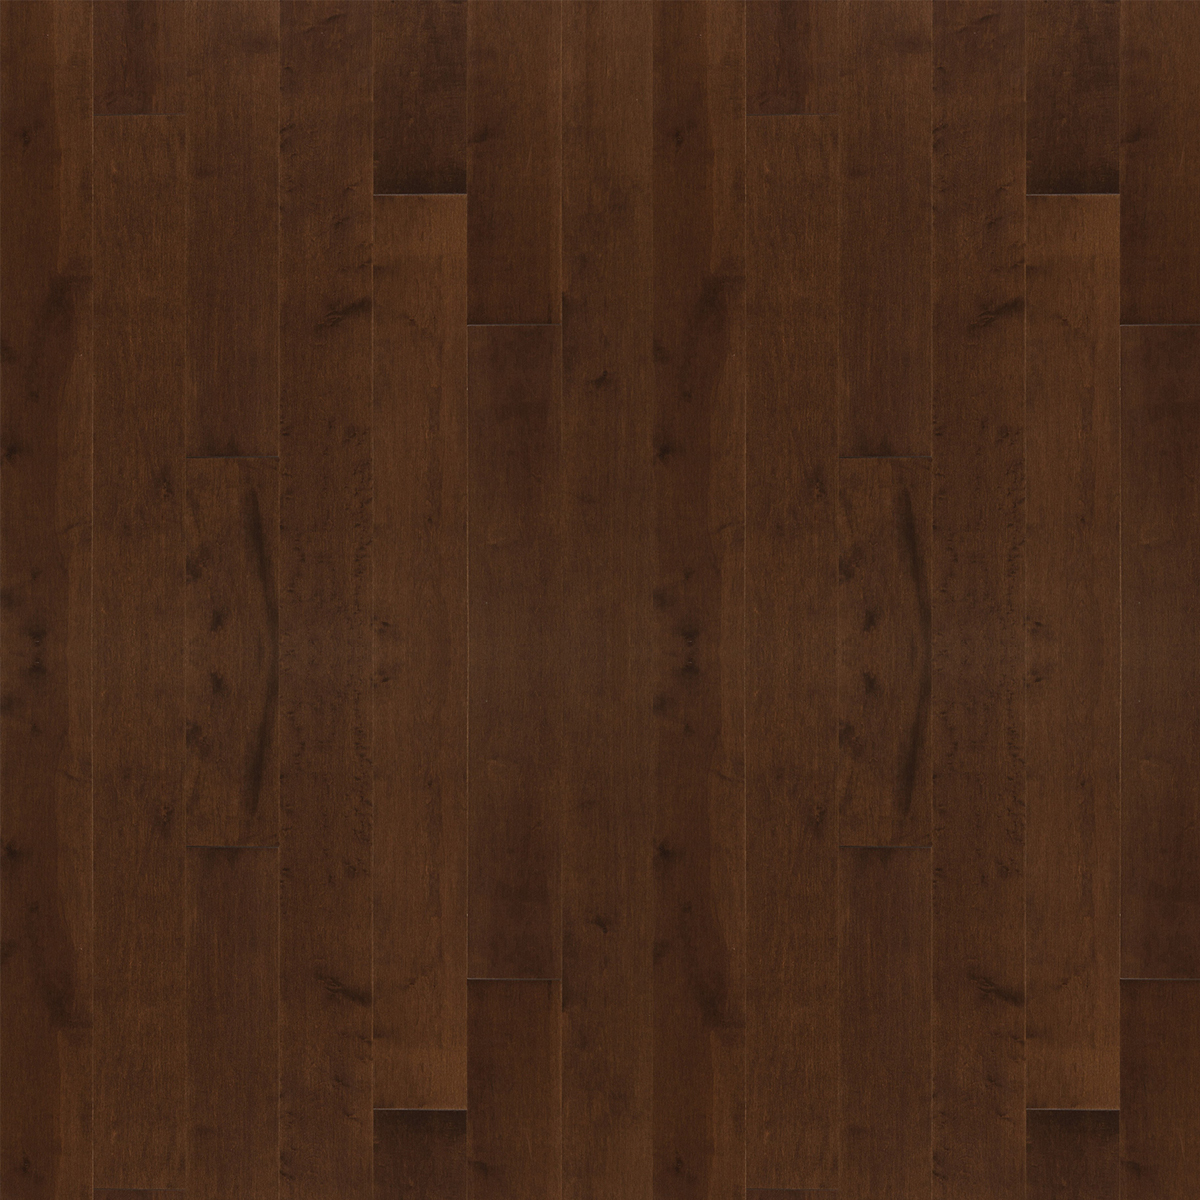 Hard Maple Solid Hardwood Flooring 4 1, Maple Solid Hardwood Flooring